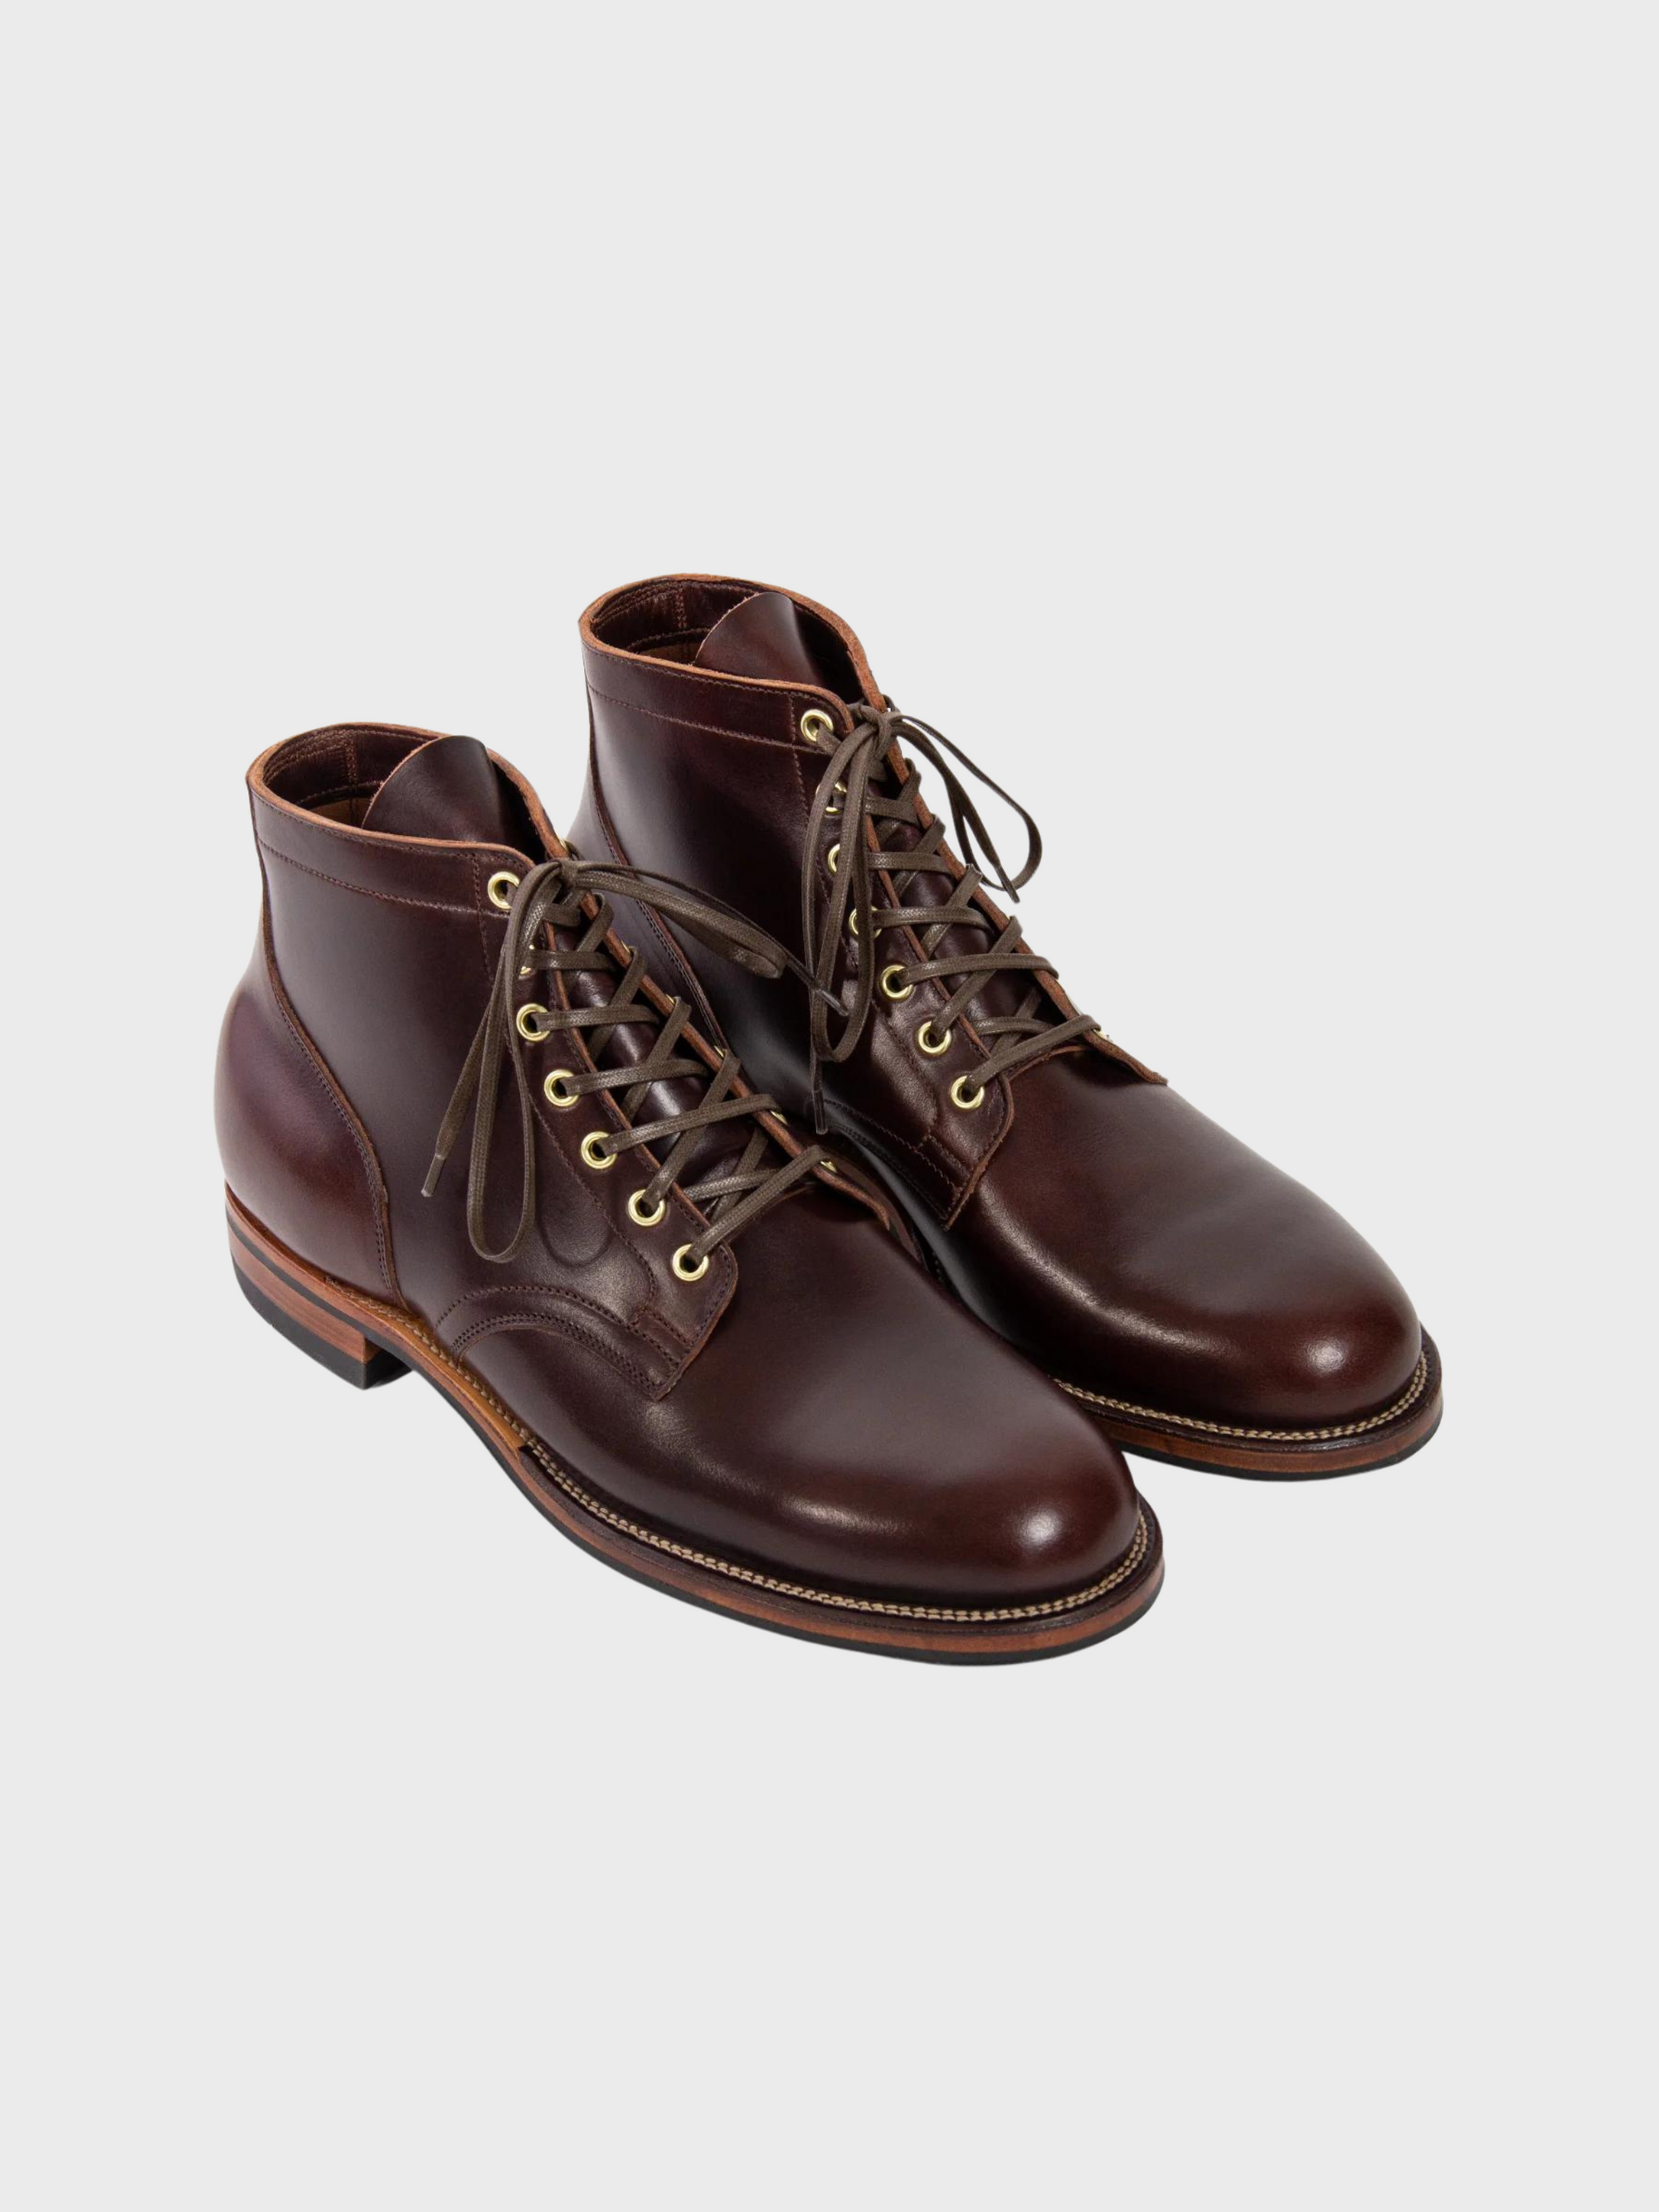 Viberg CORE - Service Boot Plain Toe Brown CXL-Men&#39;s Shoes-Yaletown-Vancouver-Surrey-Canada